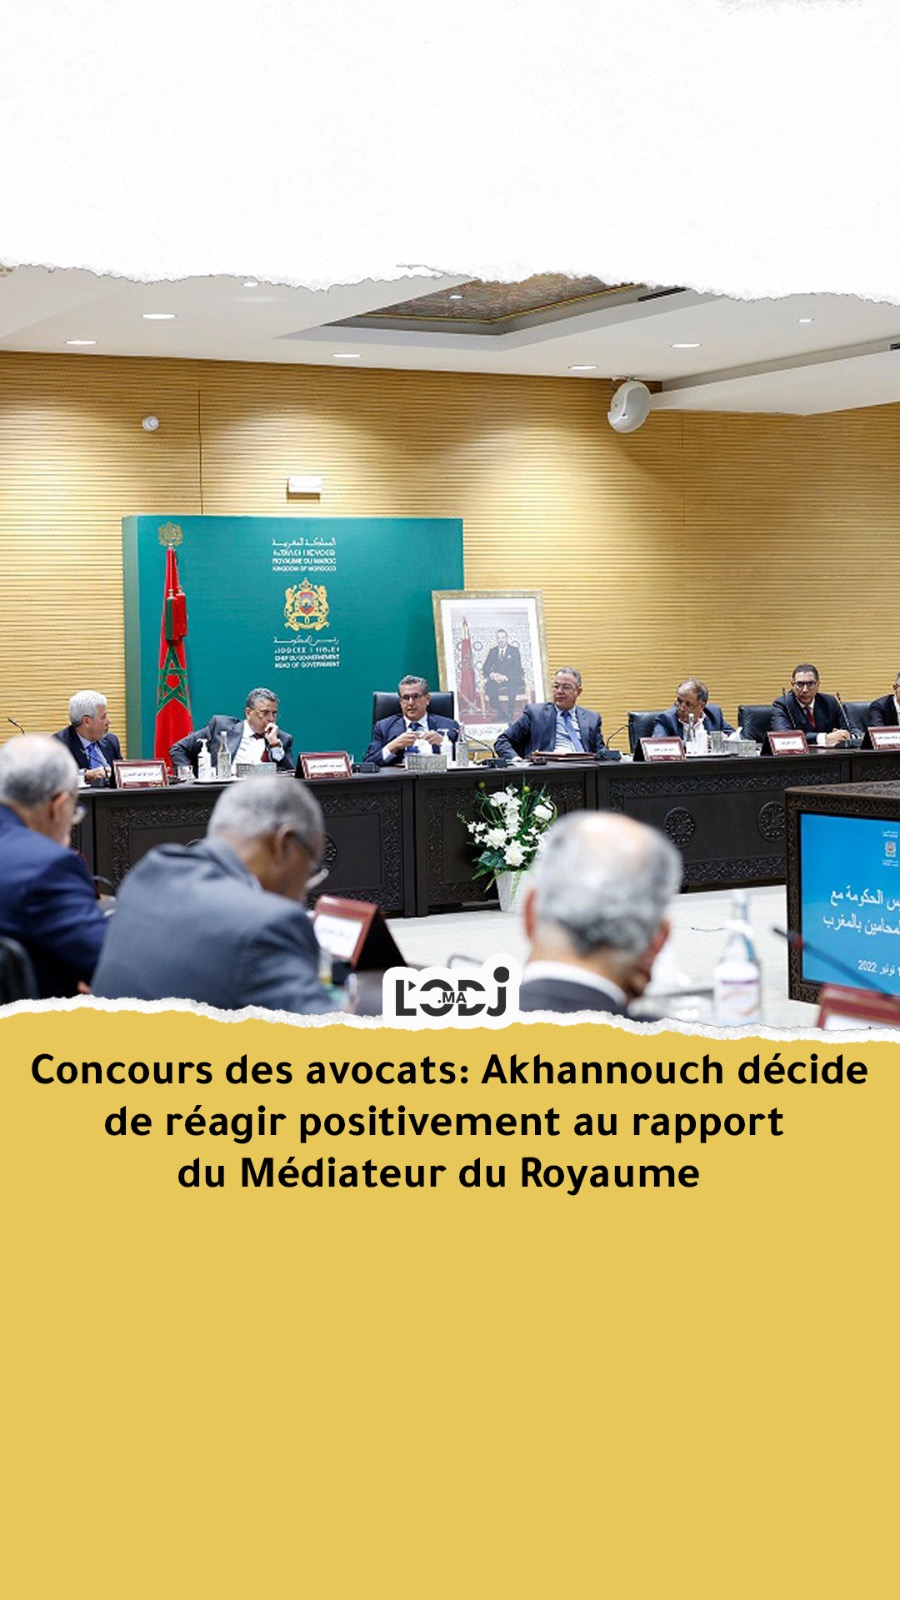 Concours des avocats: Akhannouch décide de réagir positivement au rapport du Médiateur du Royaume